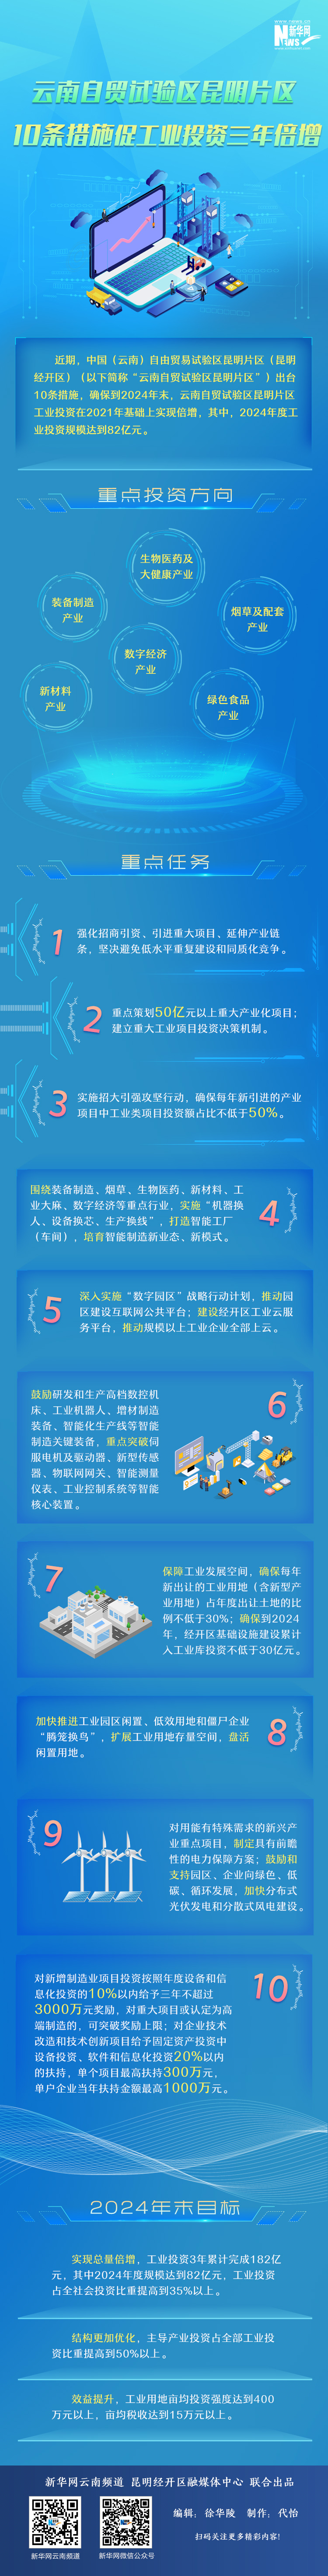 云南自贸试验区昆明片区10条措施促工业投资三年倍增